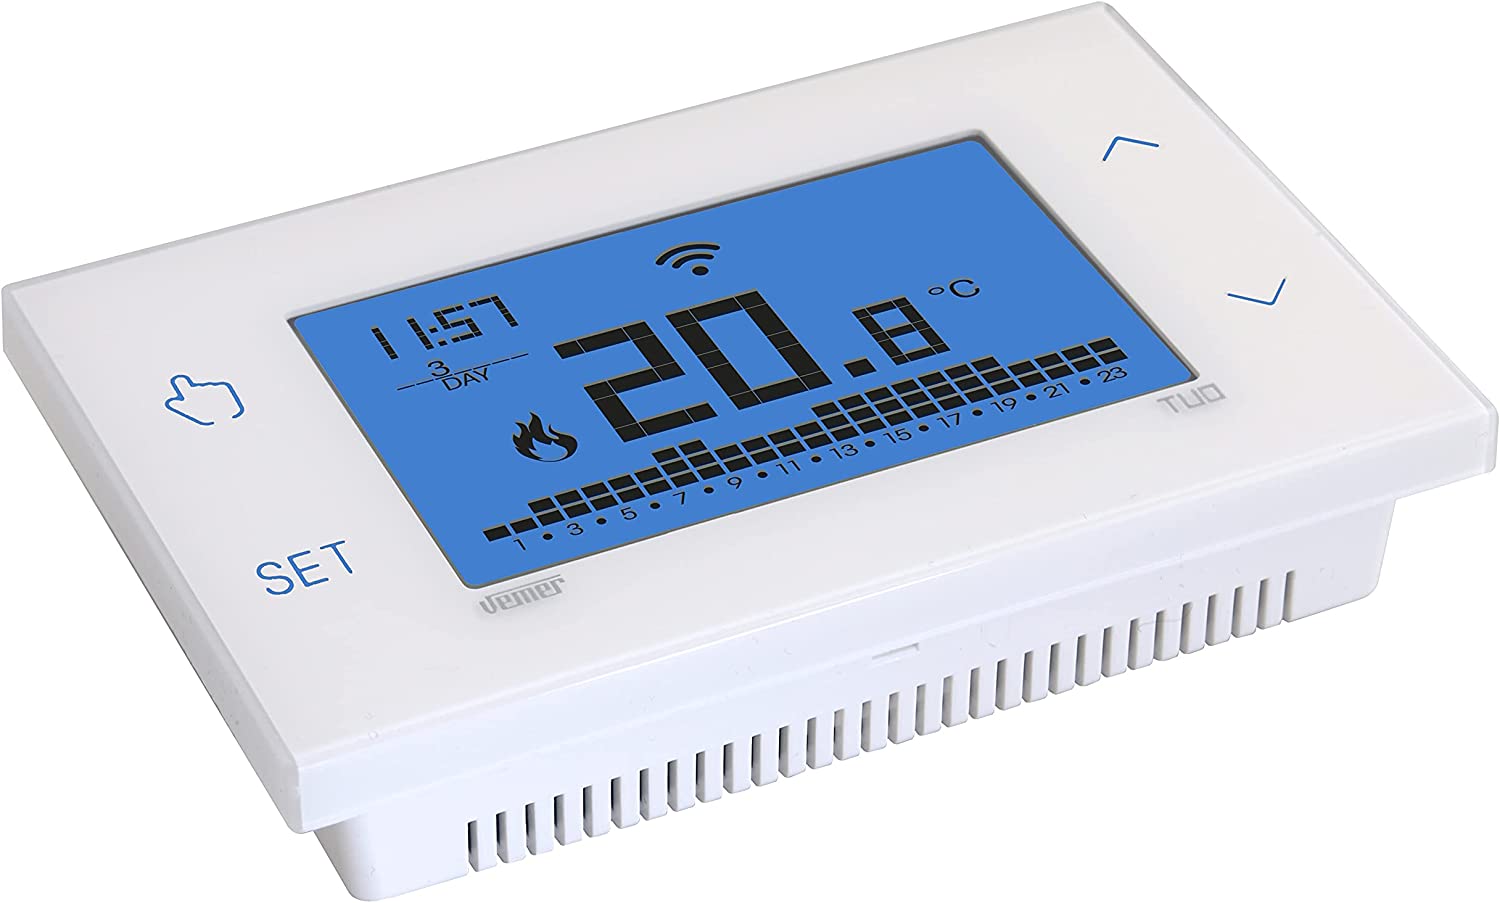 VEMER VE788600 TUO WiFi Batterie - Thermostat Heizung Smart Home, WLAN Raumthermostat, Wochenprogrammierung, Steuerbar mit APP über Smartphone mit iOS und Android, Weiß